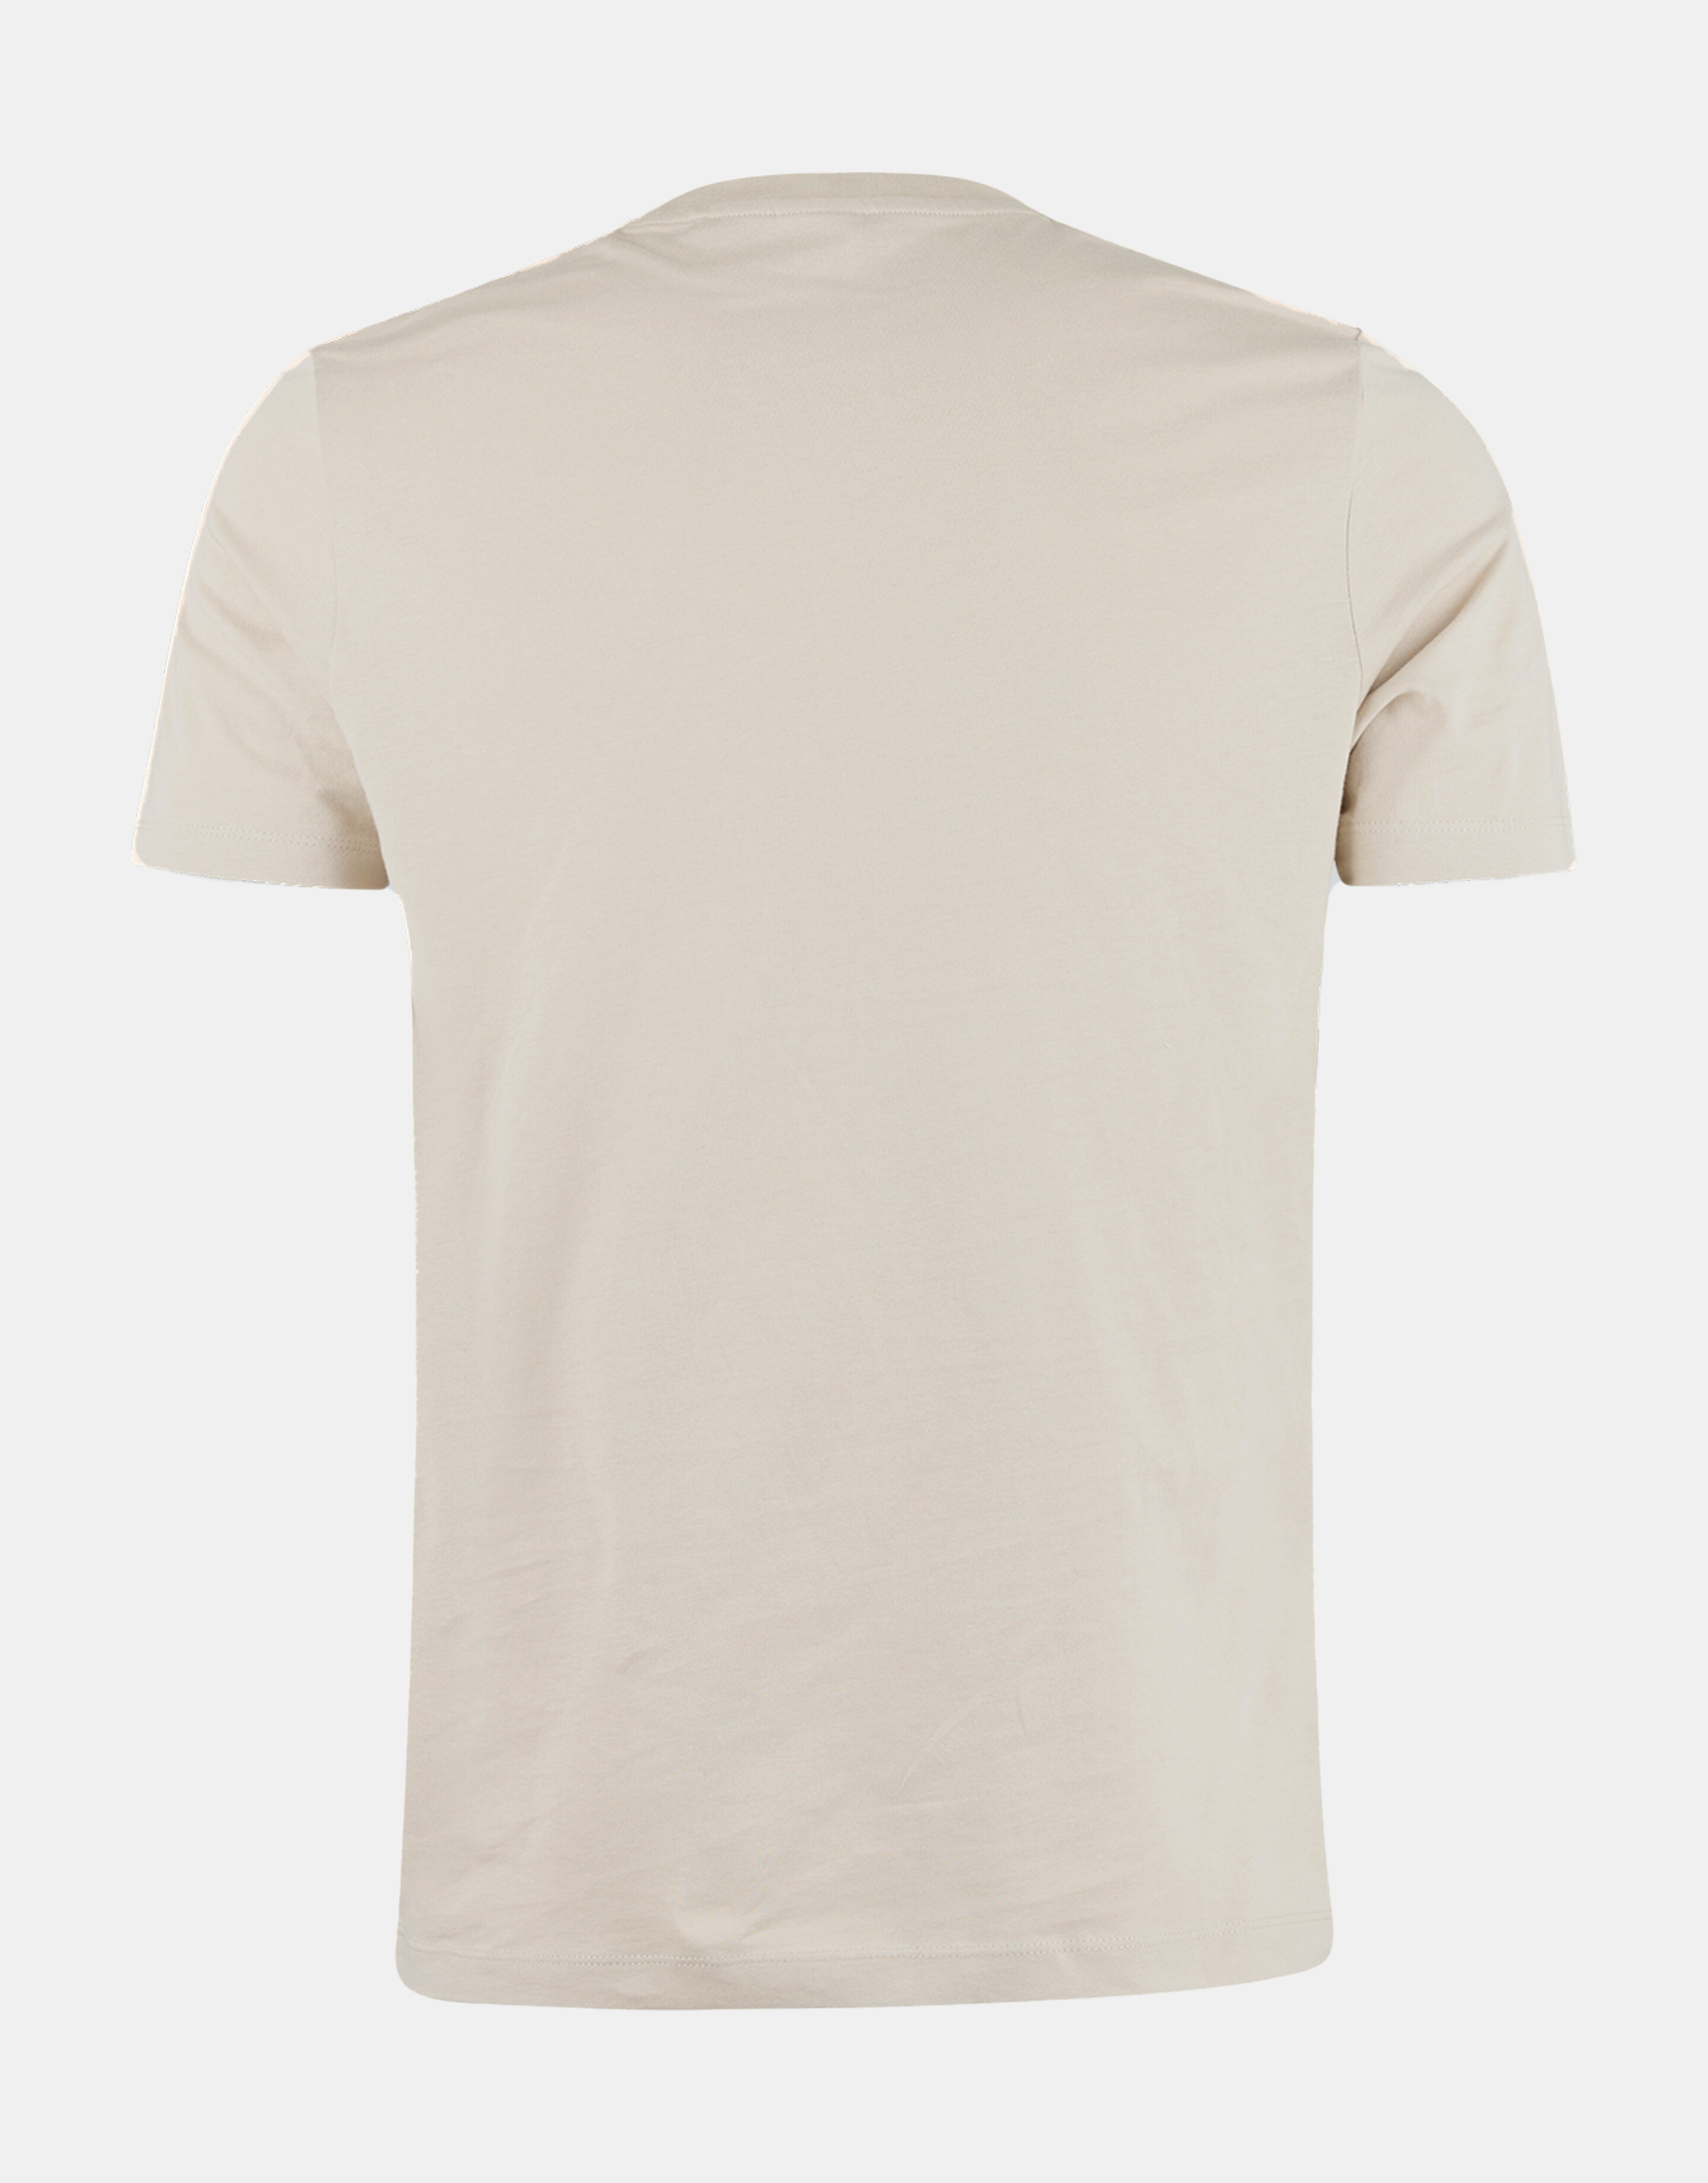 Quadratisches T-Shirt REFILL